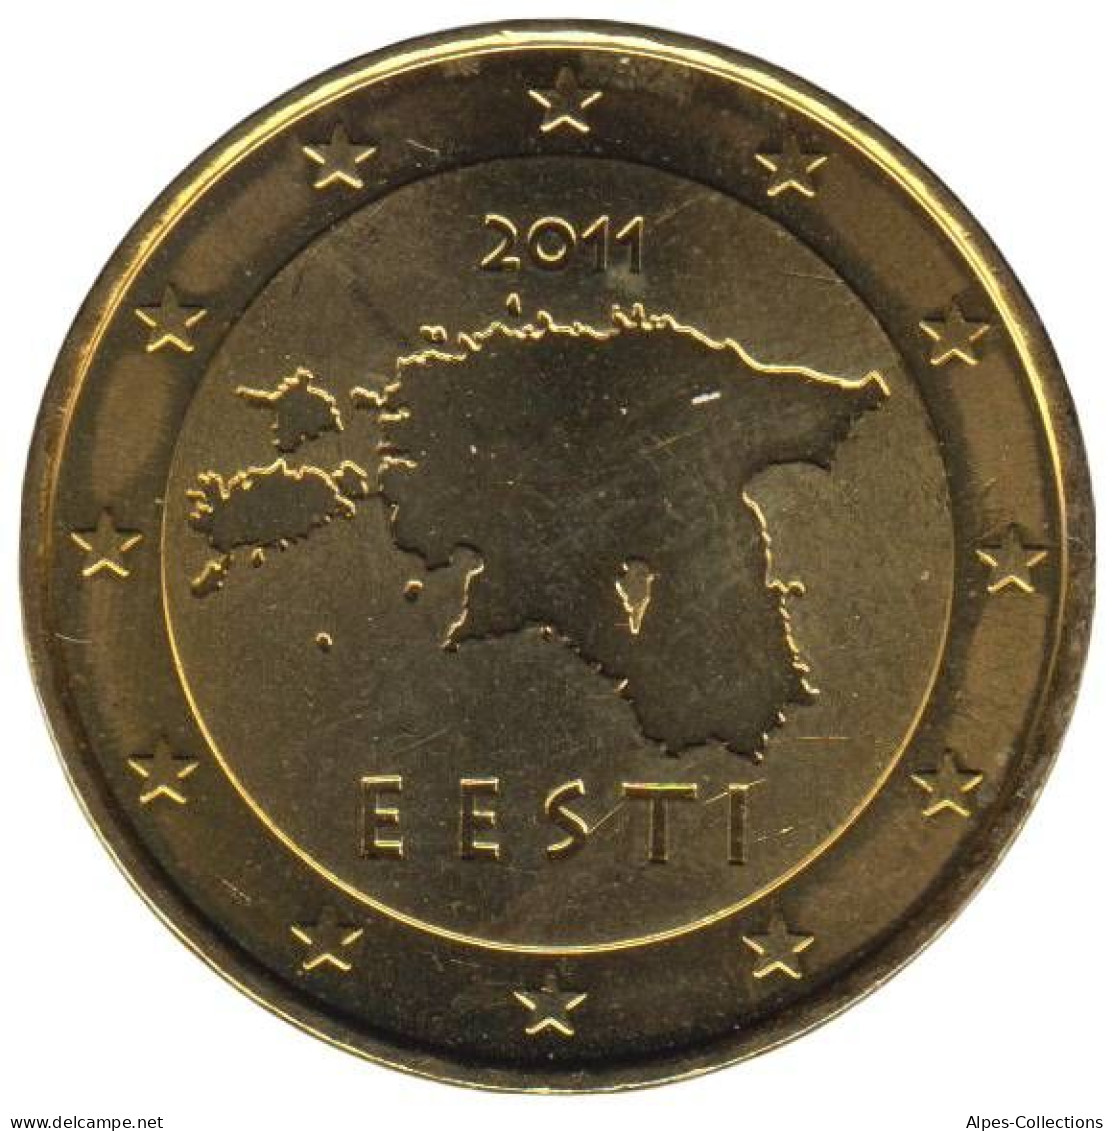 ET05011.1 - ESTONIE - 50 Cents - 2011 - Estonia